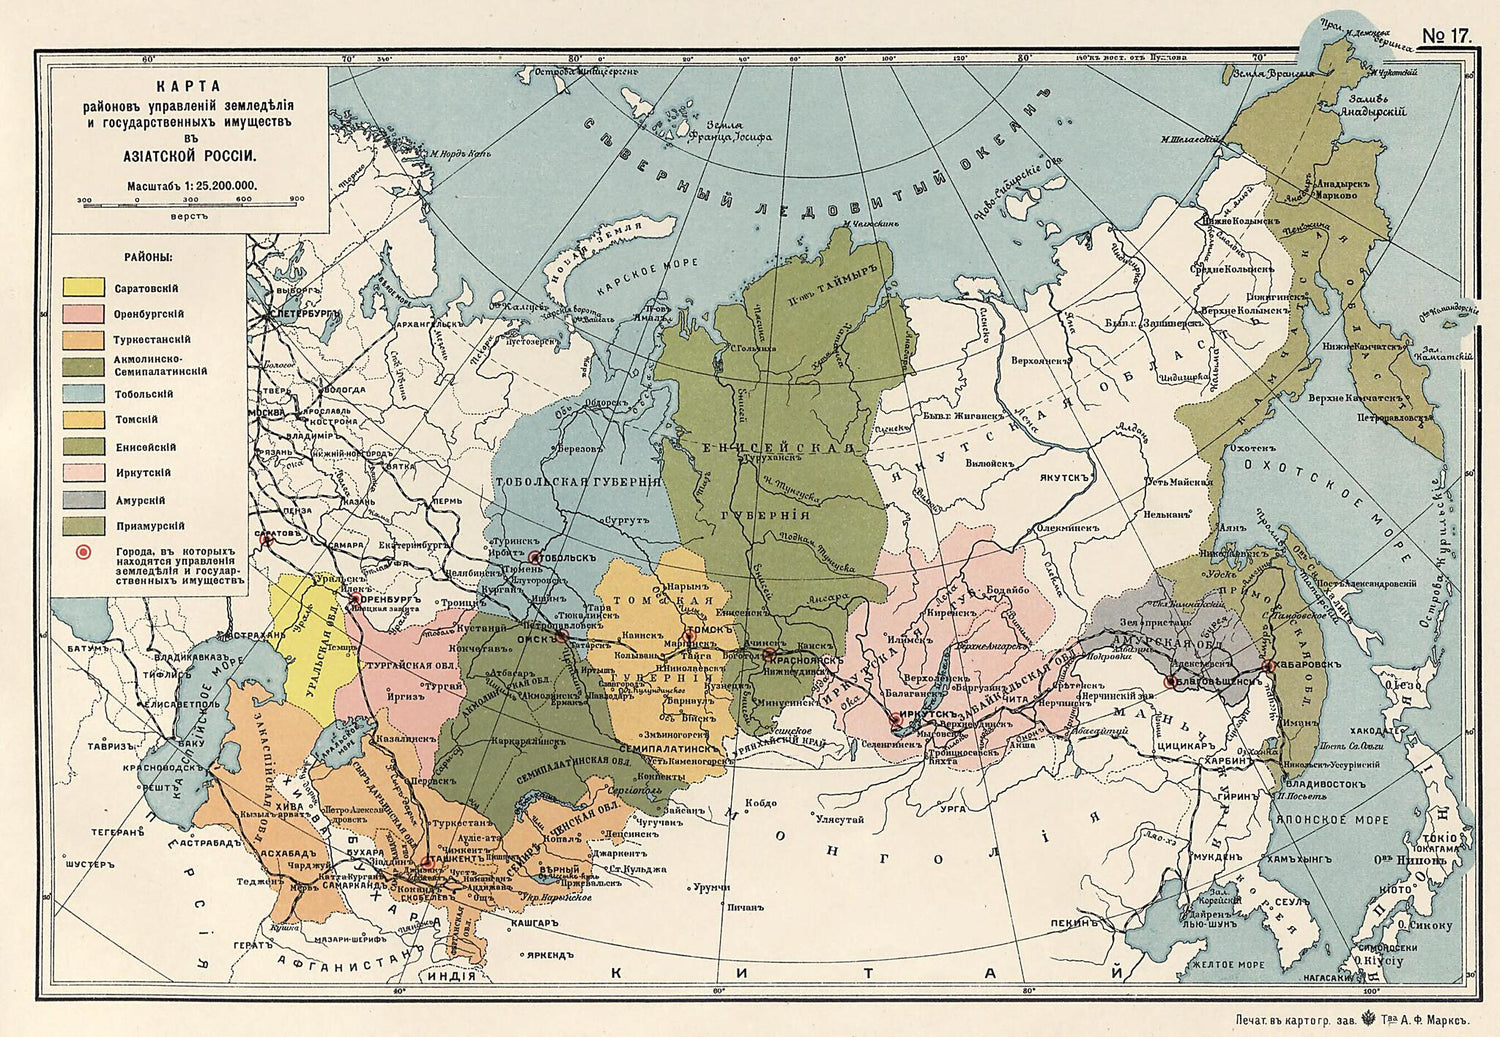 This old map of Karta Raionov Upravlenii Zemledeliia I Gosudarstvennykh Imushchestv V Aziatskoi Rossii from 1914 was created by  in 1914